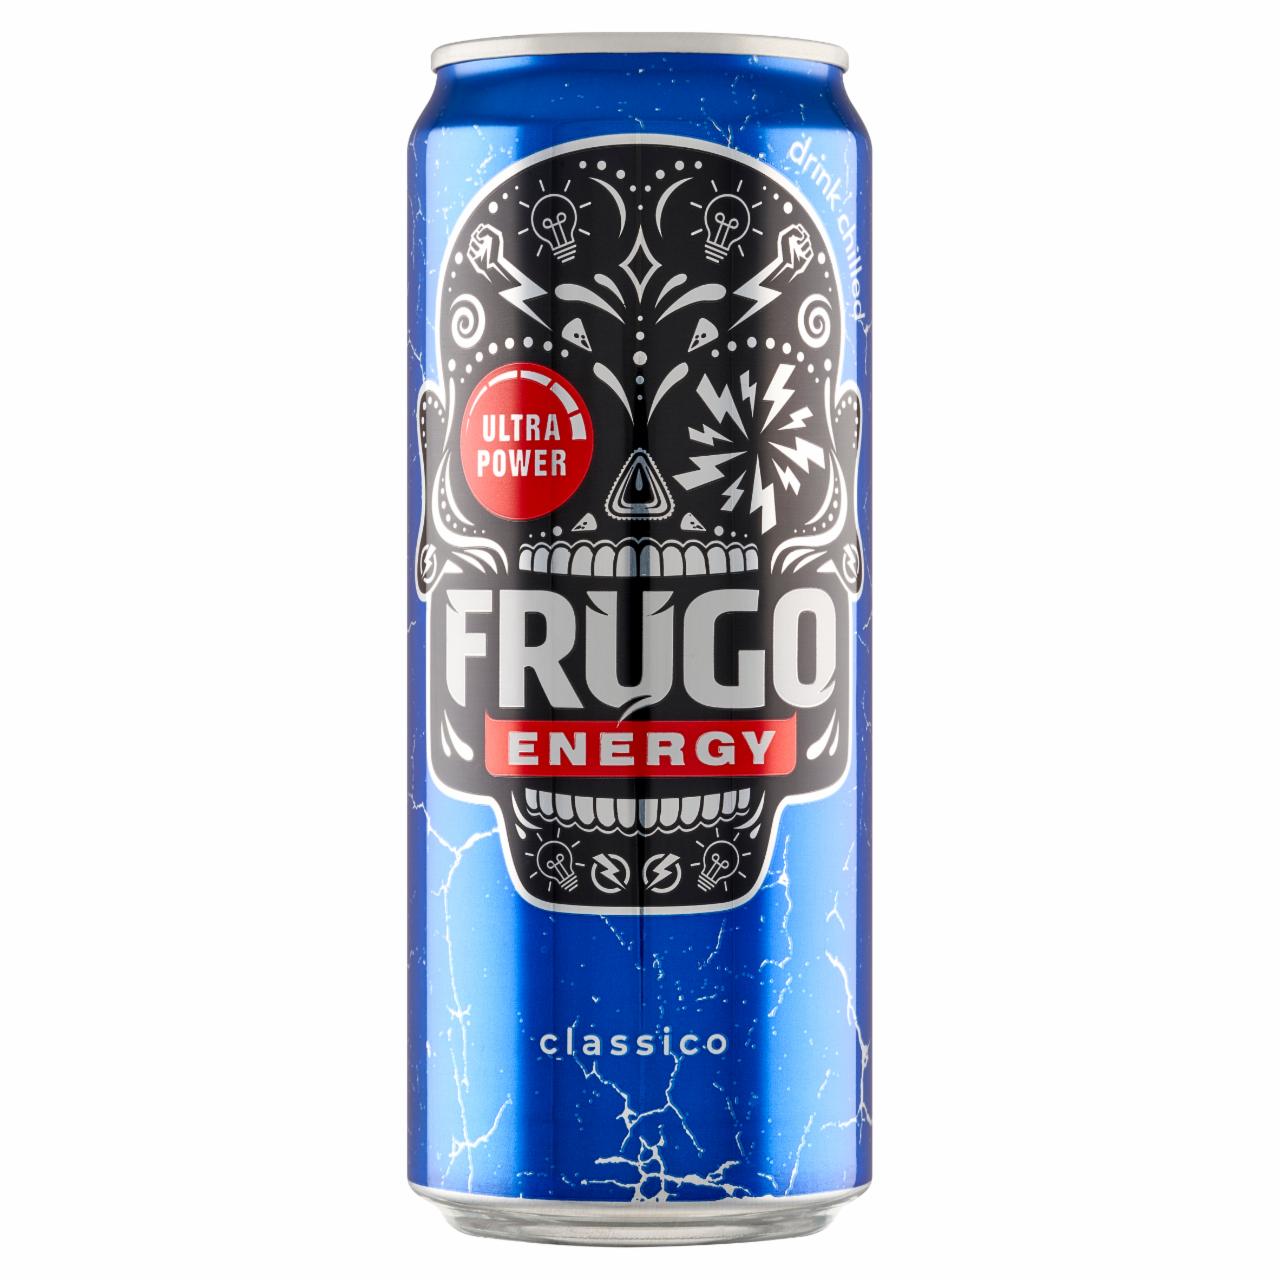 Zdjęcia - Frugo Energy Classico Gazowany napój energetyzujący 330 ml